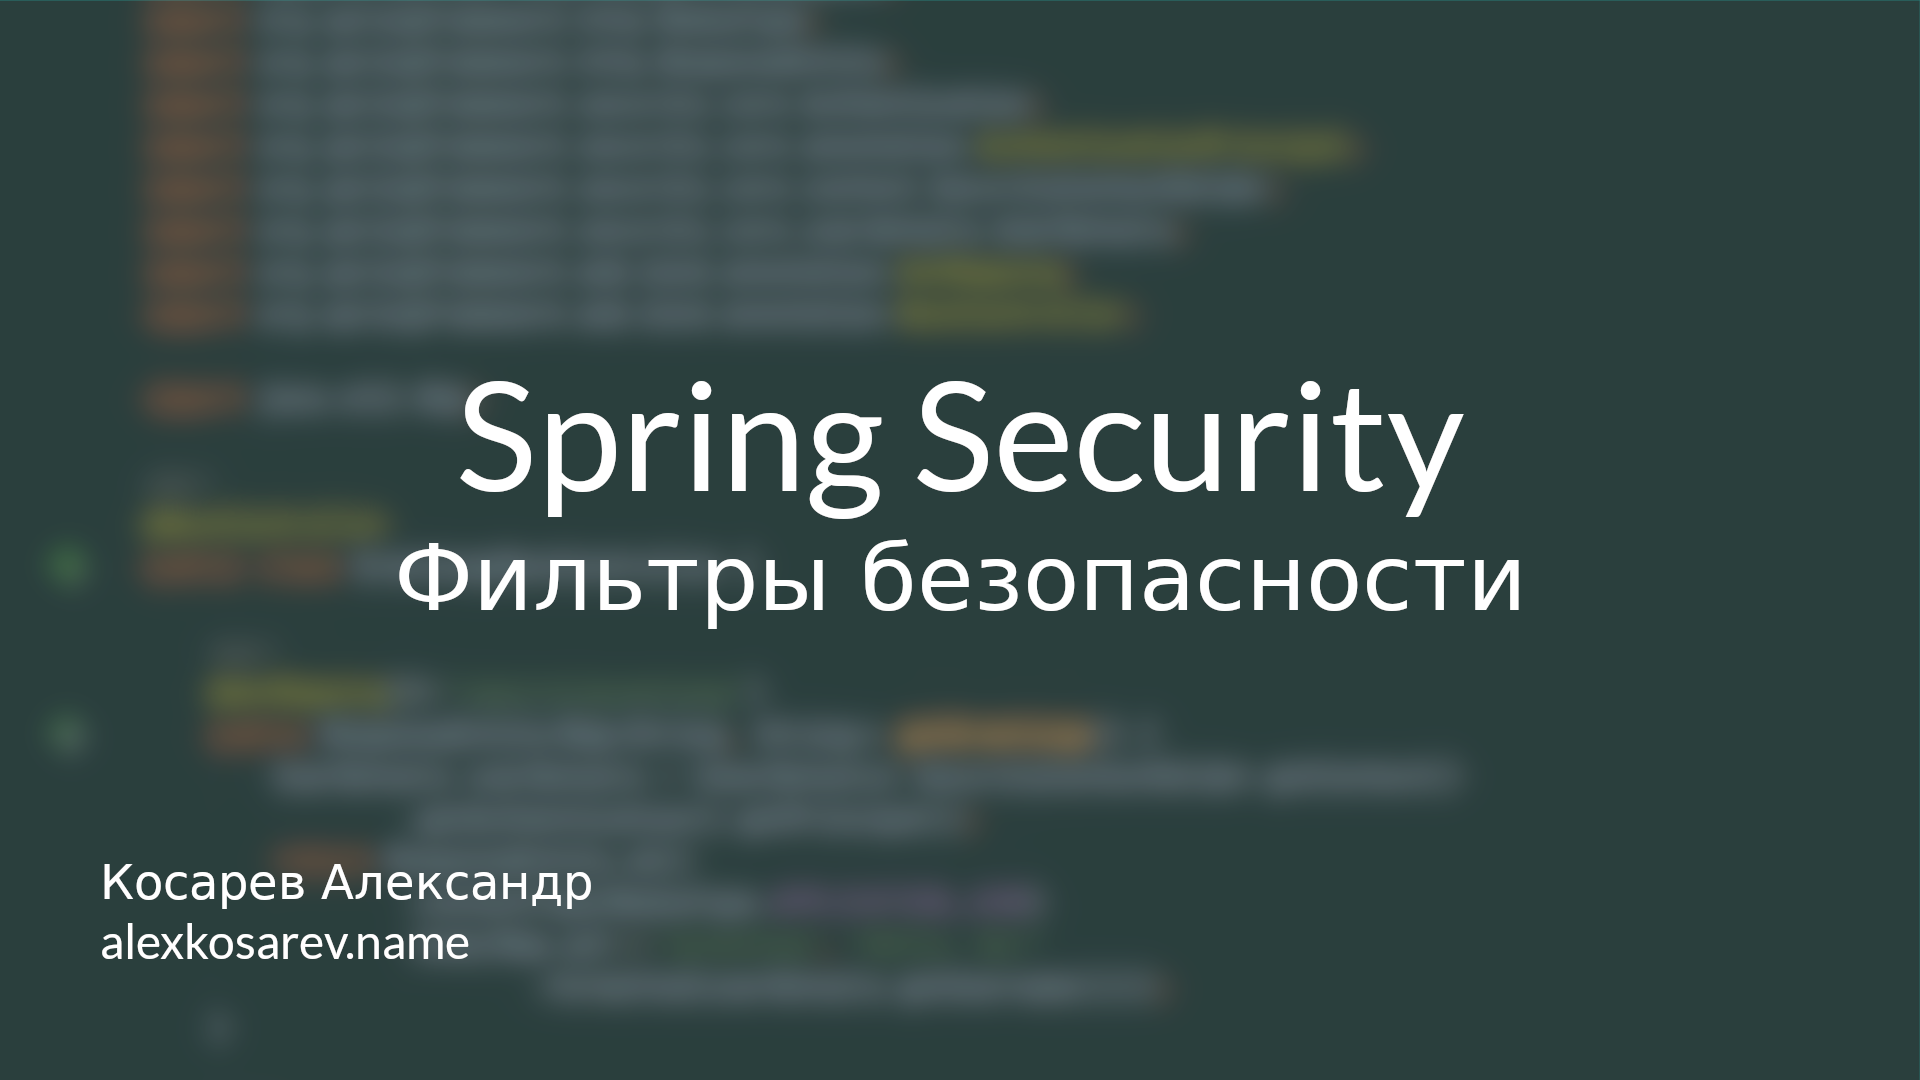 Фильтры безопасности - Spring Security в деталях